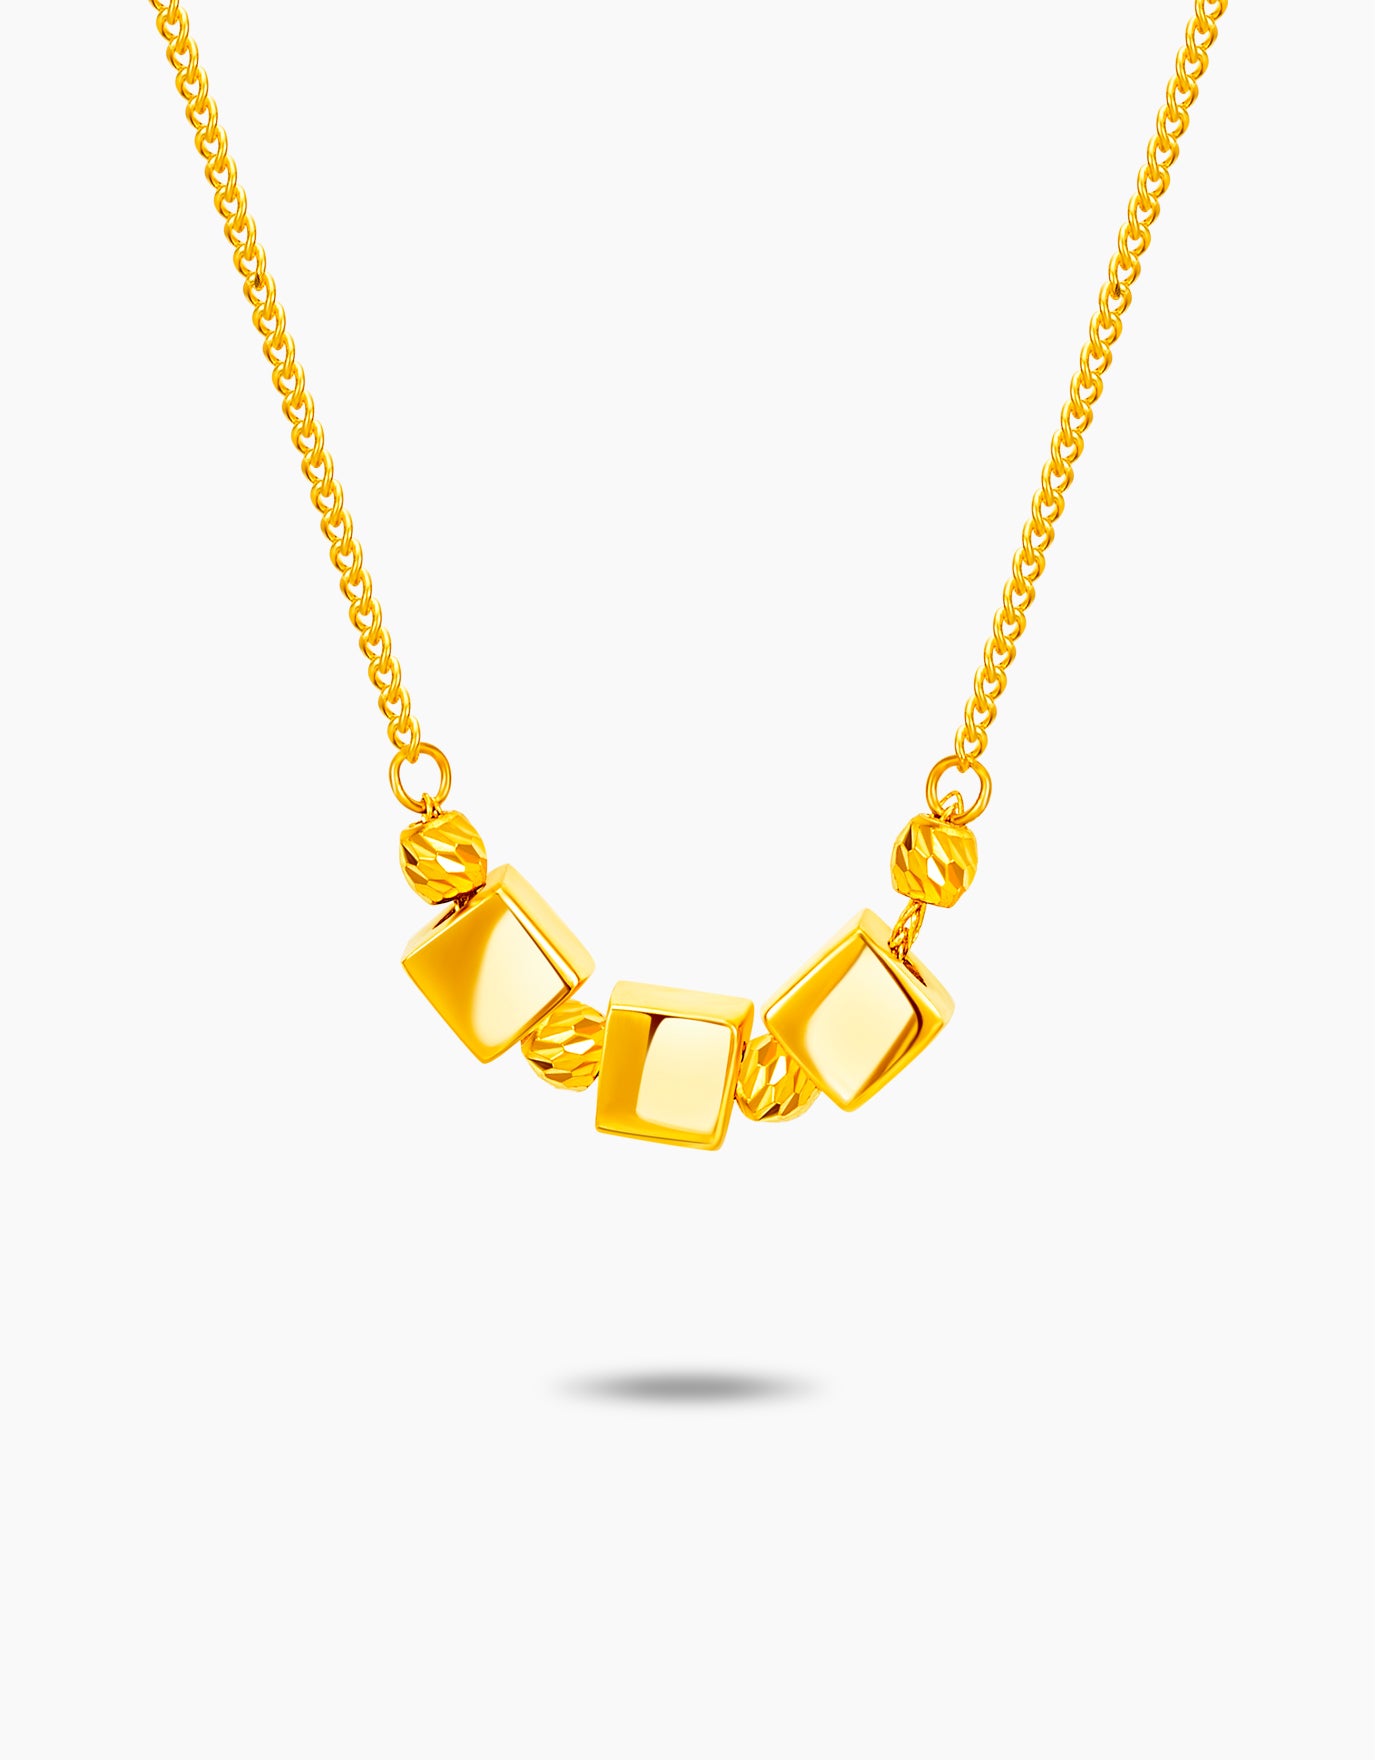 LVC 9IN Cubique 999 Gold Necklace